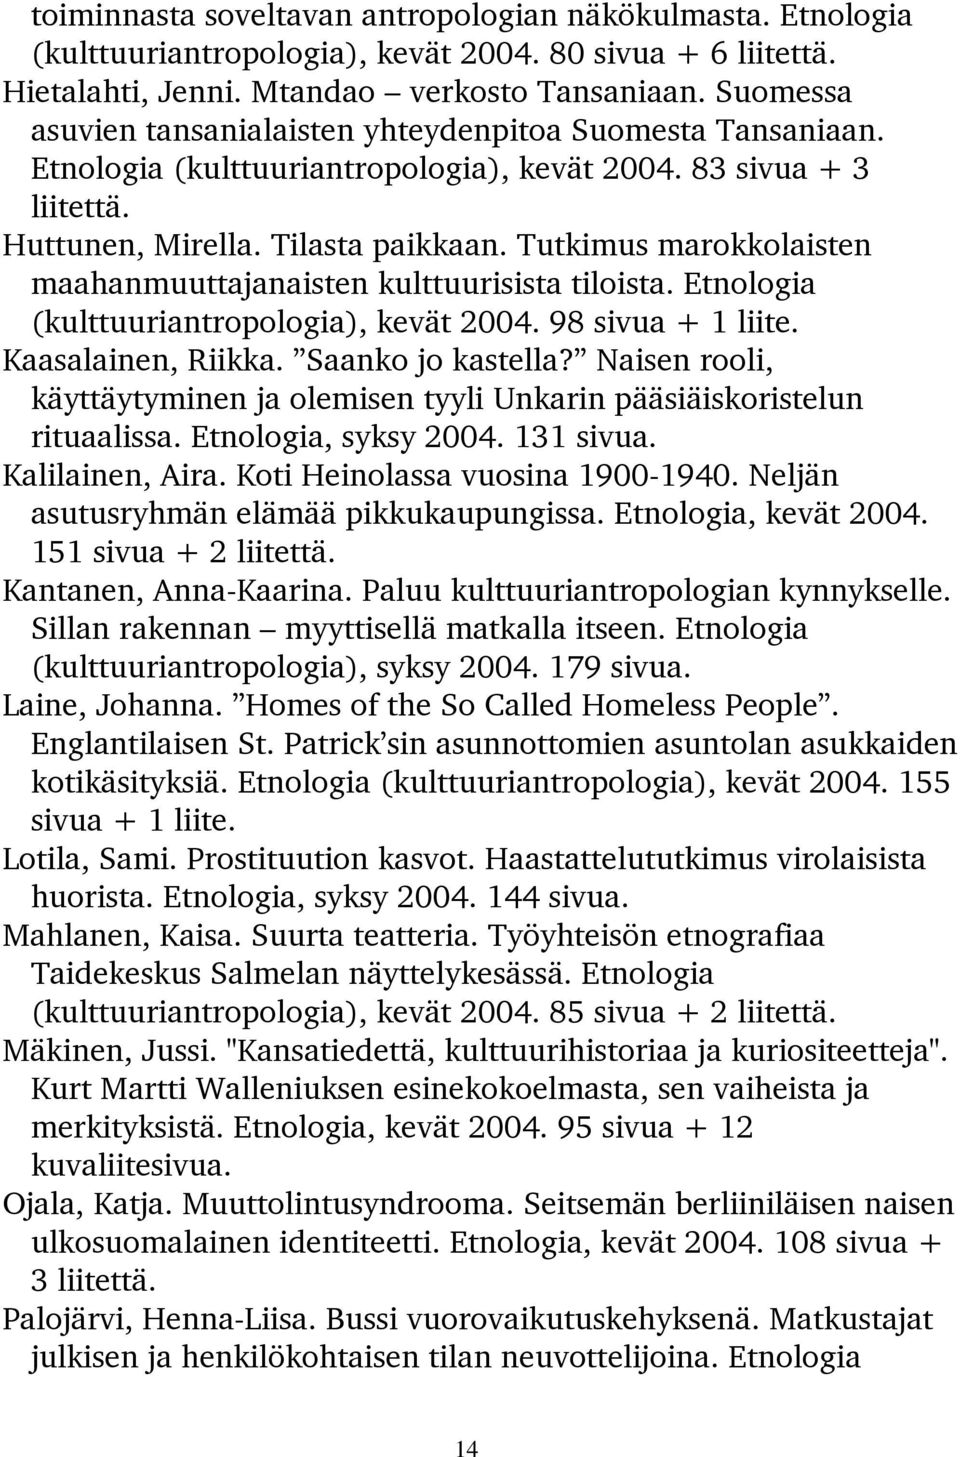 Tutkimus marokkolaisten maahanmuuttajanaisten kulttuurisista tiloista. Etnologia (kulttuuriantropologia), kevät 2004. 98 sivua + 1 liite. Kaasalainen, Riikka. Saanko jo kastella?